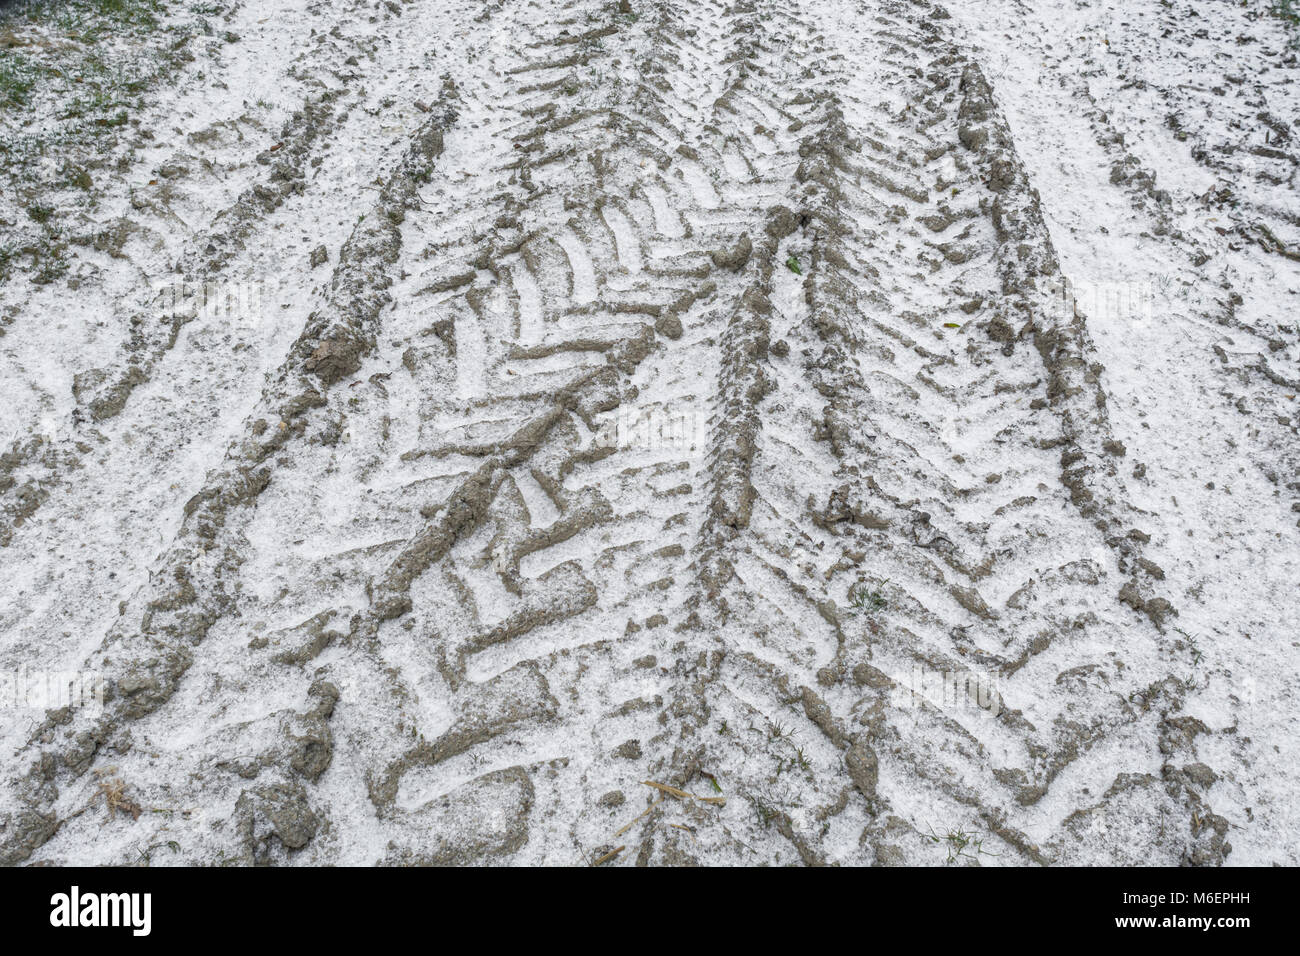 Coperta di neve il pneumatico del trattore le vie durante la 'bestia da est' - potenziale per distruggere ed agricola. Foto Stock